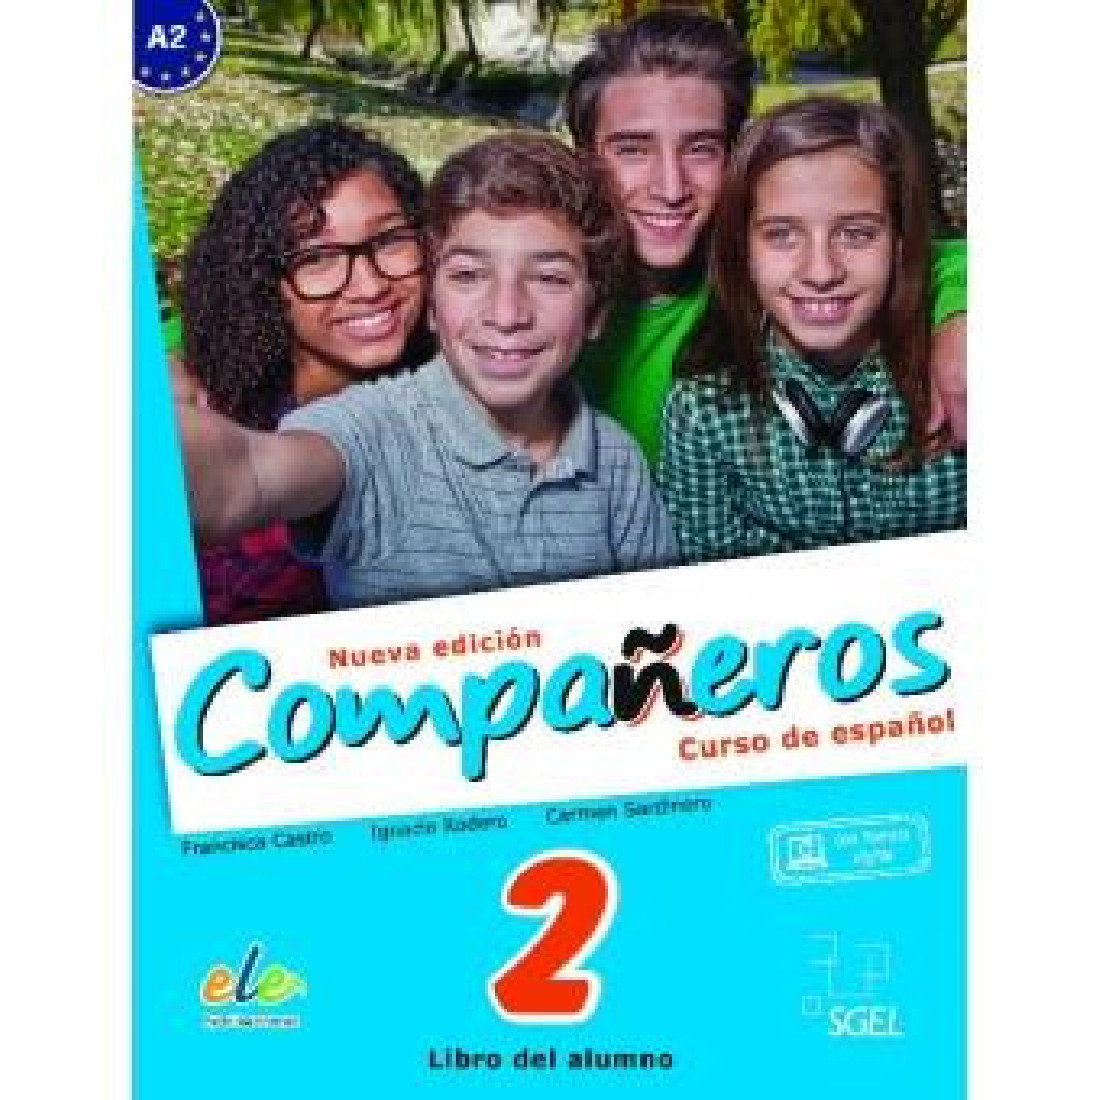 COMPANEROS CURSO DE ESPANOL 2 NUEVA EDITION